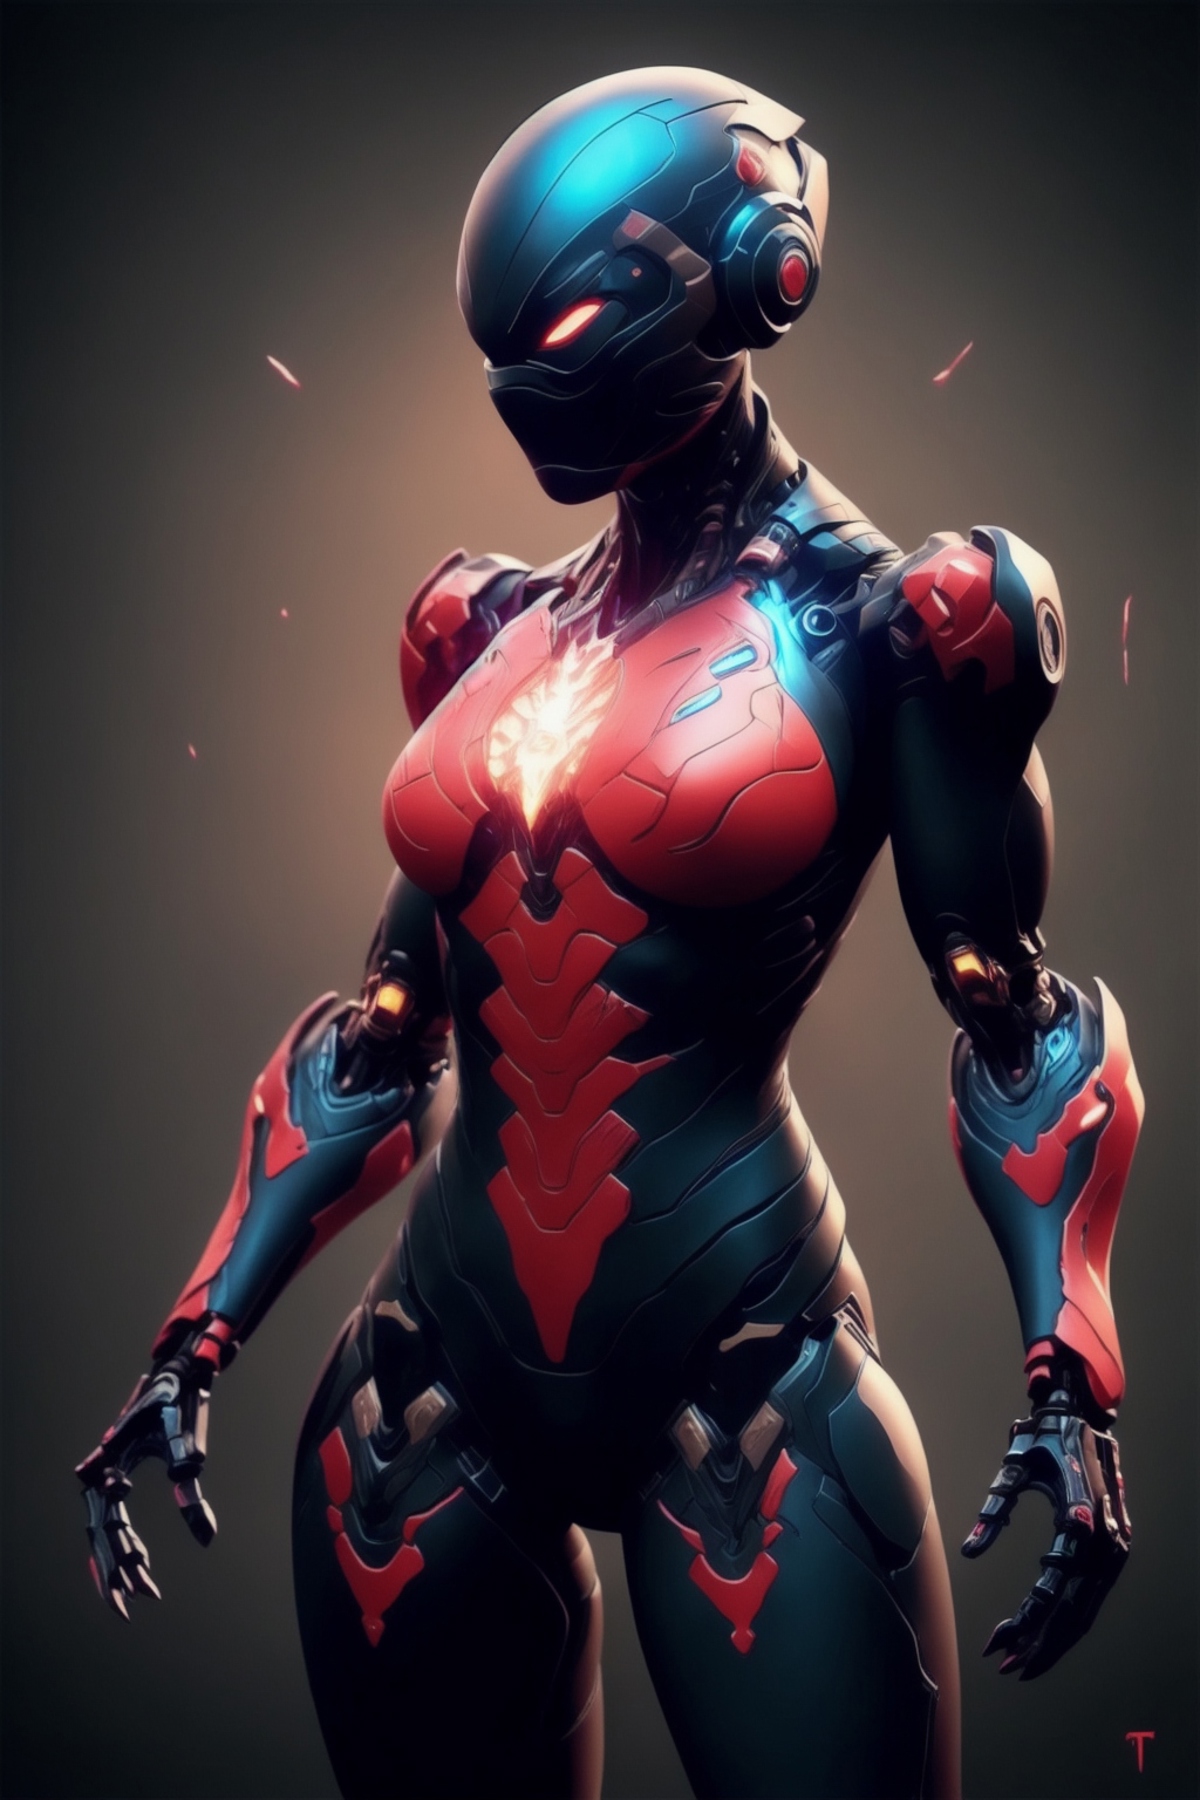 ninja armor image by likot